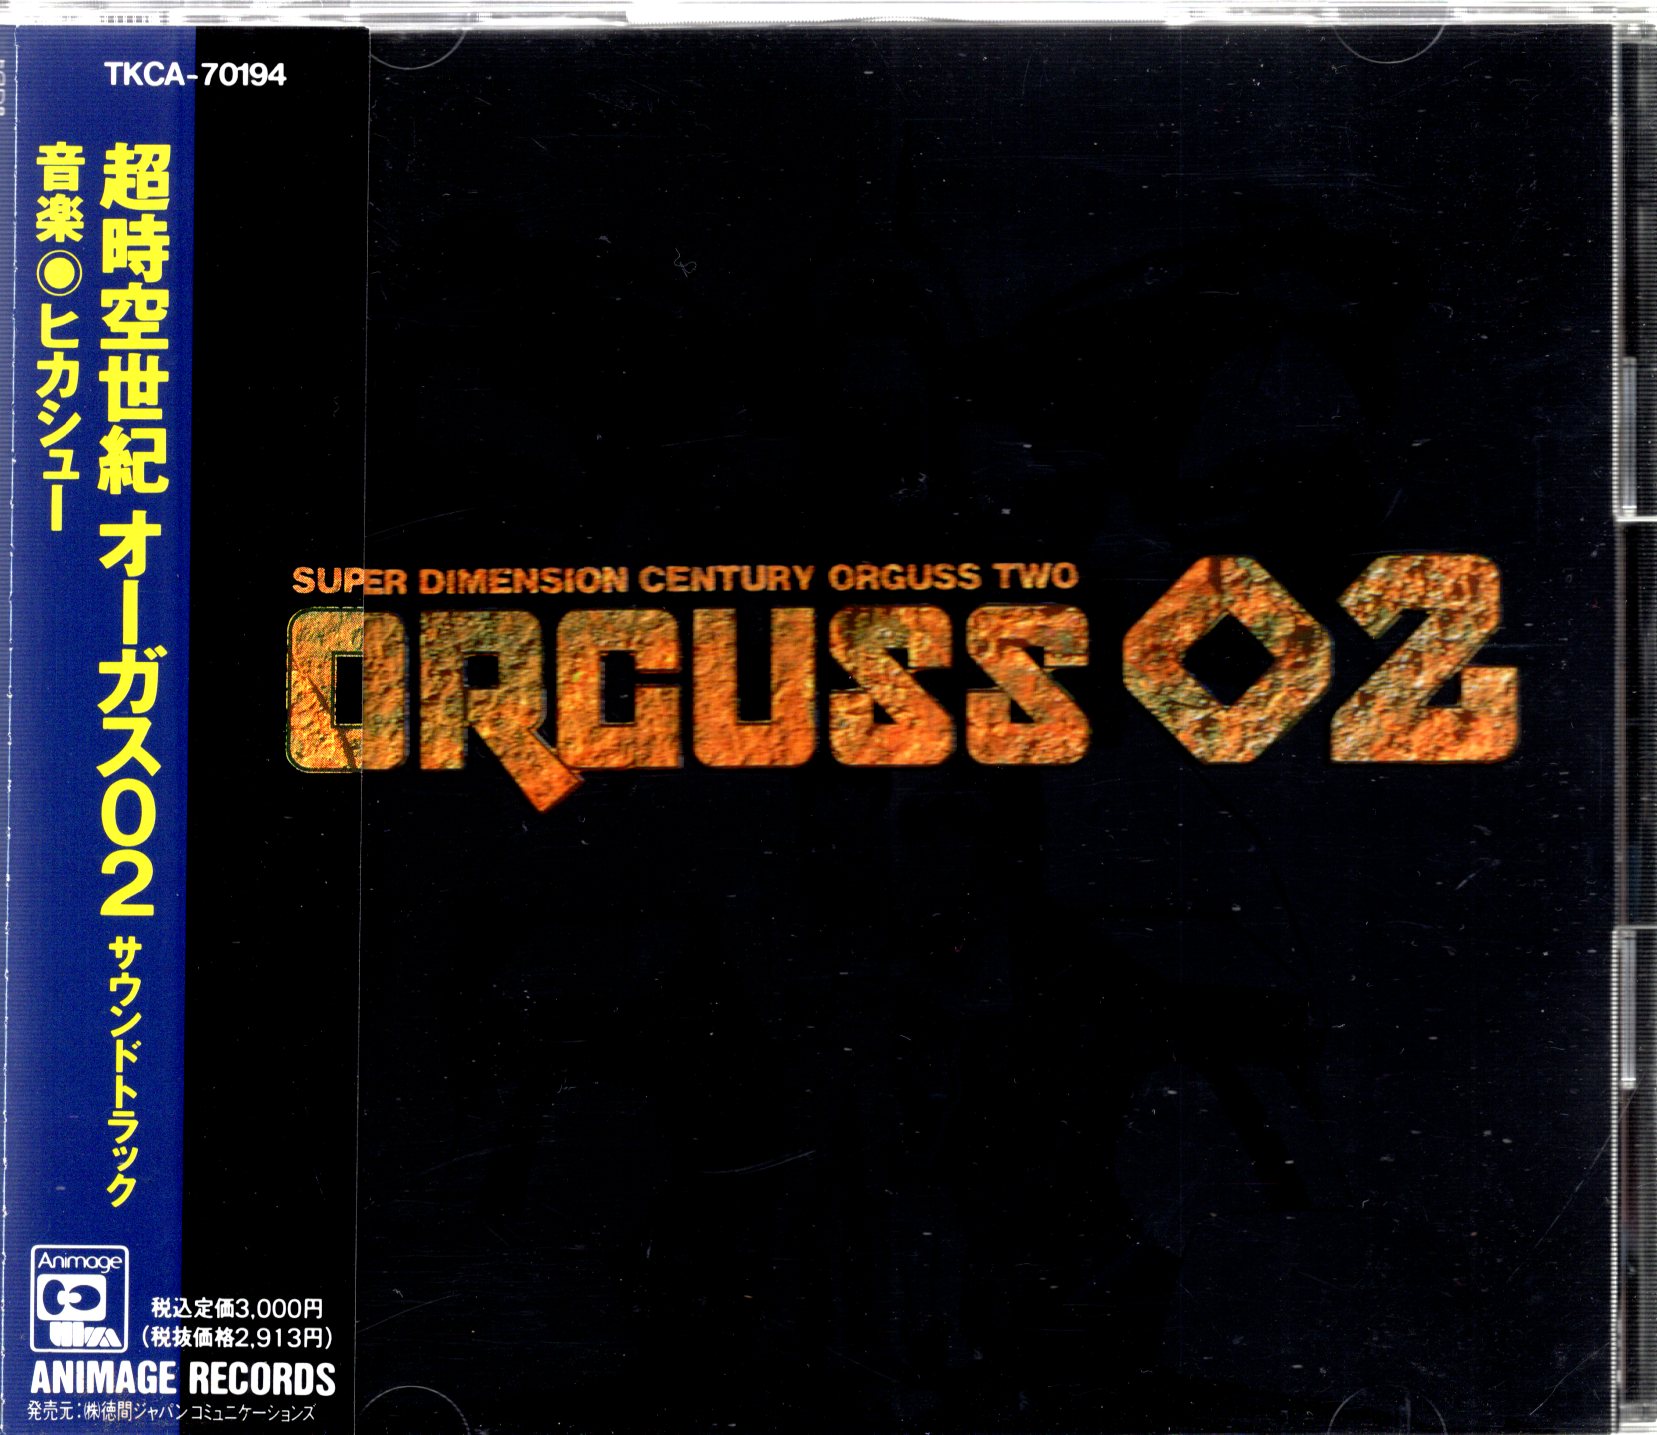 国内配送 「超時空世紀オーガス02」サウンドトラック CD